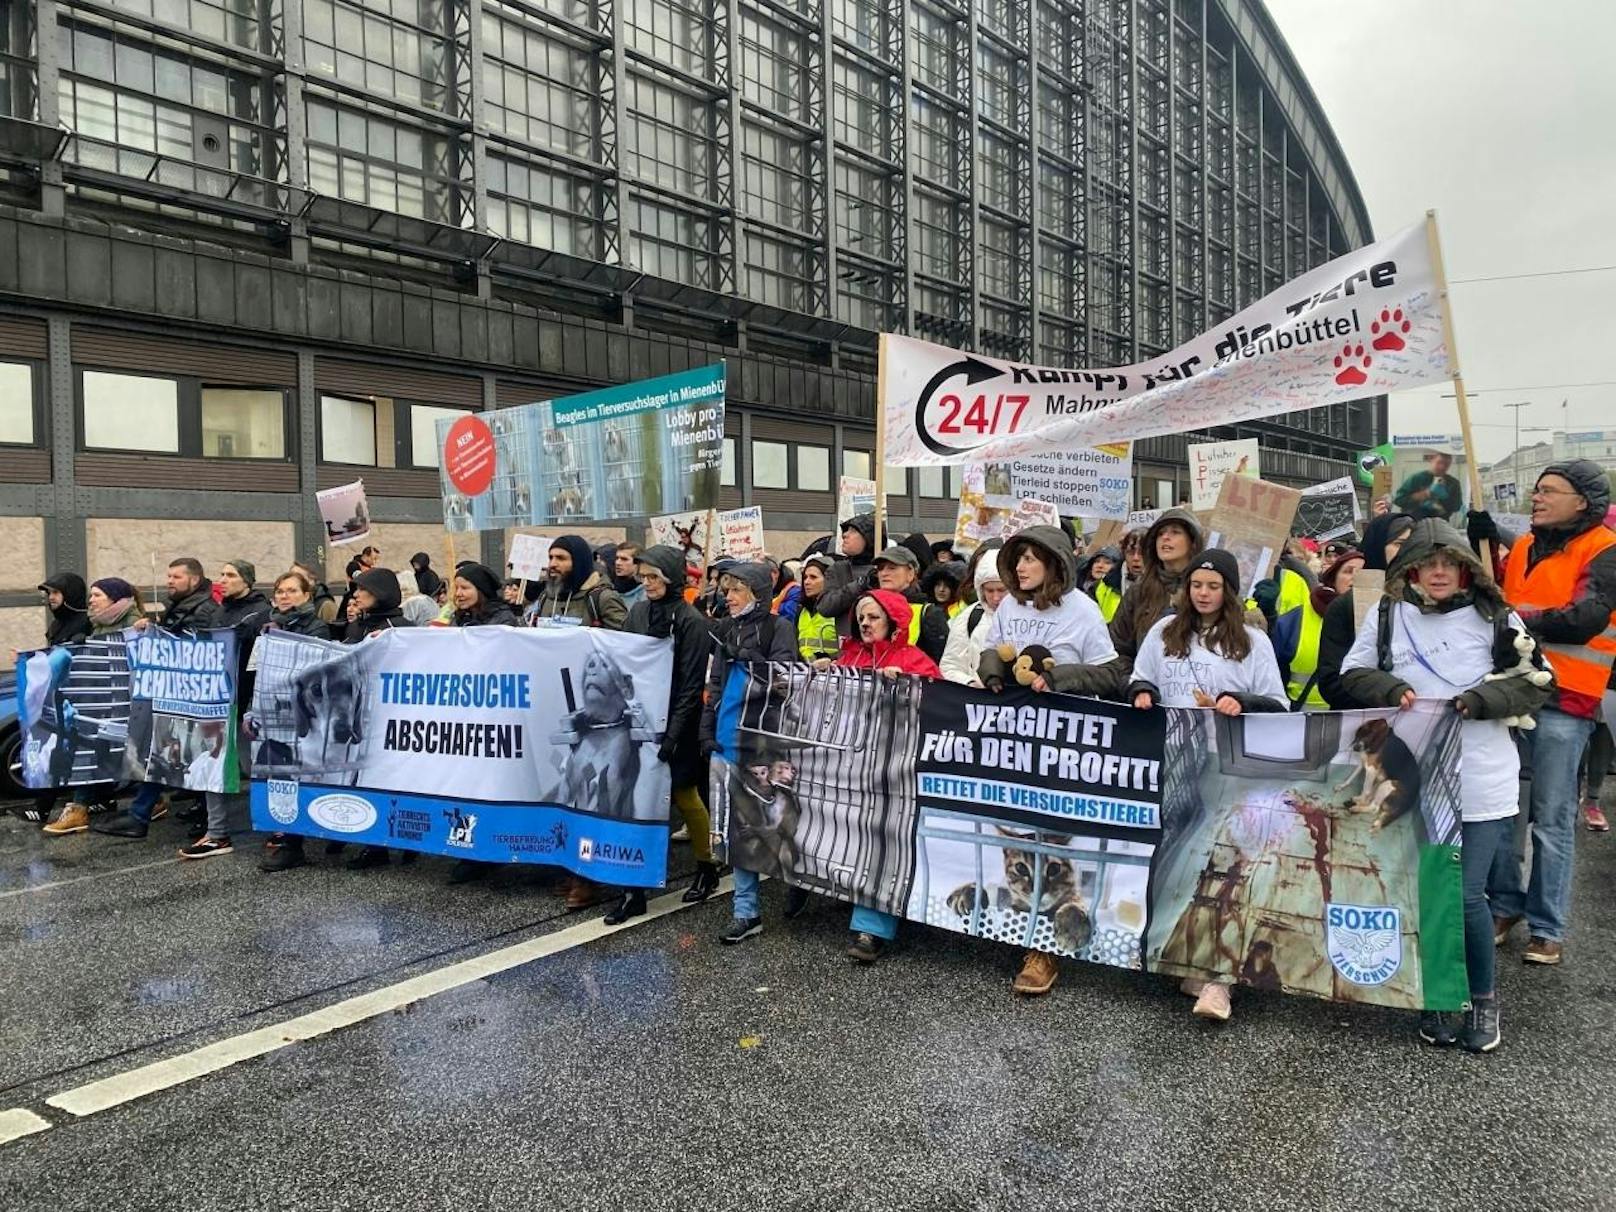 Kostümiert und mit Plakaten gingen rund 15.000 Menschen auf die Straße, um gegen Tierversuche zu demonstrieren.